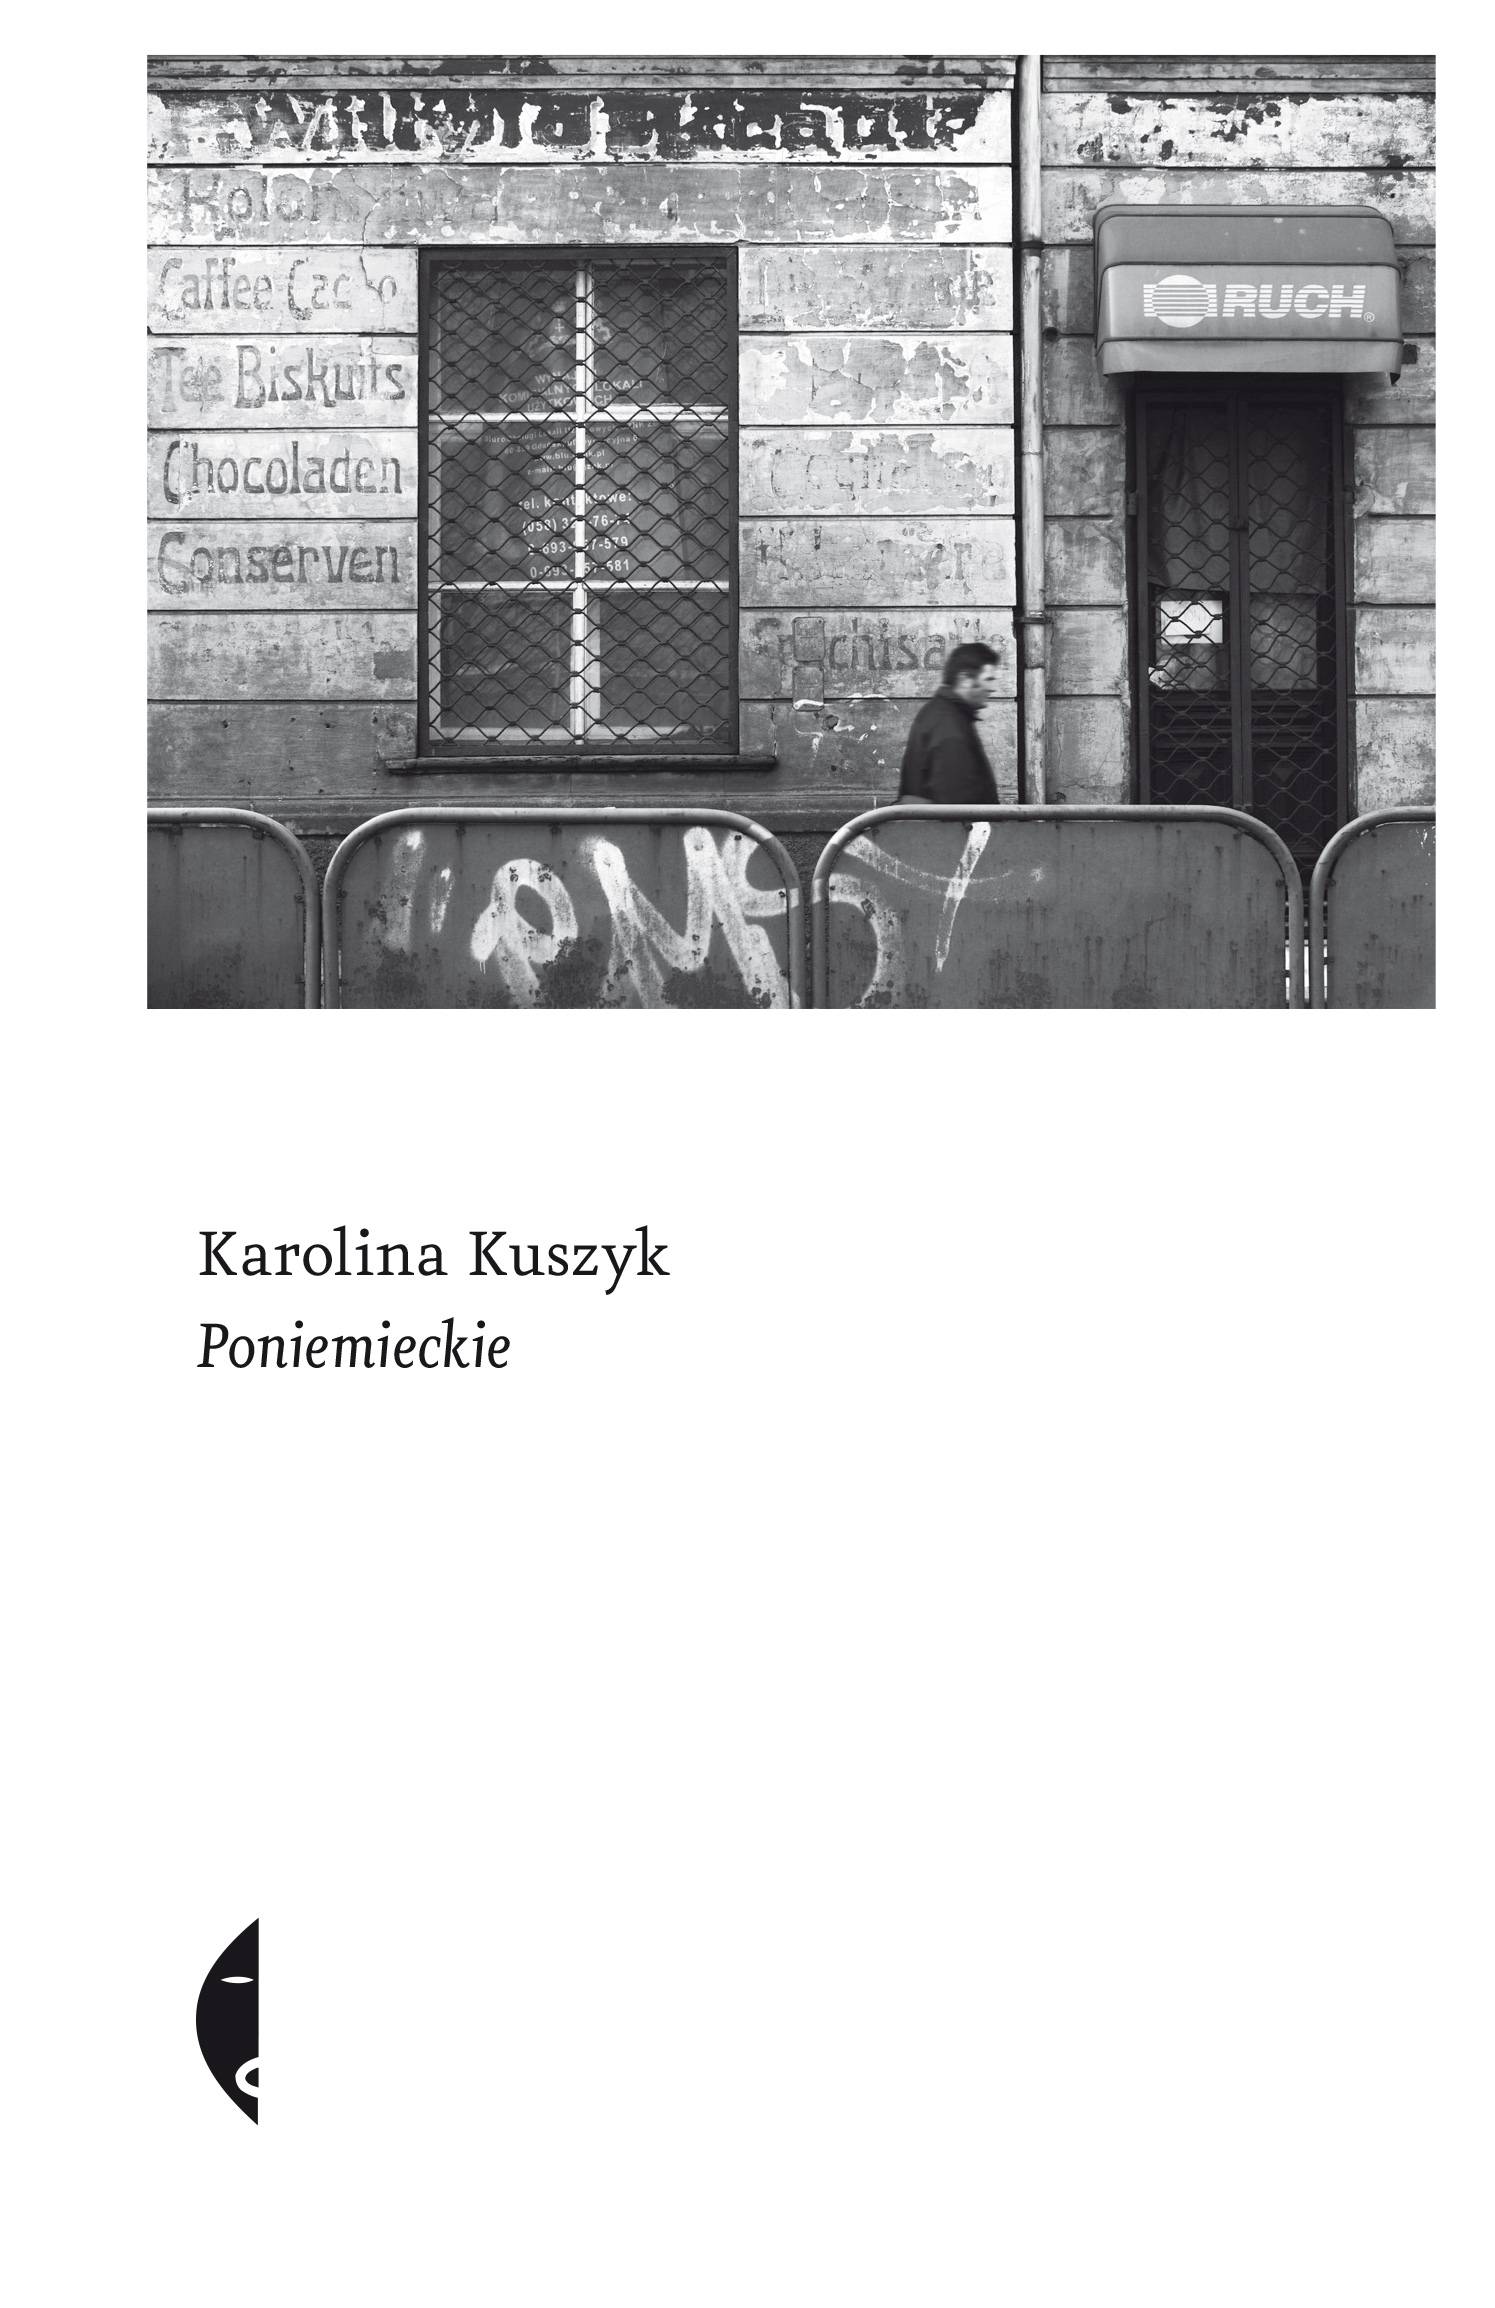 Karolina Kuszyk „Poniemieckie”, wydawnictwo Czarne, Wołowiec 2019